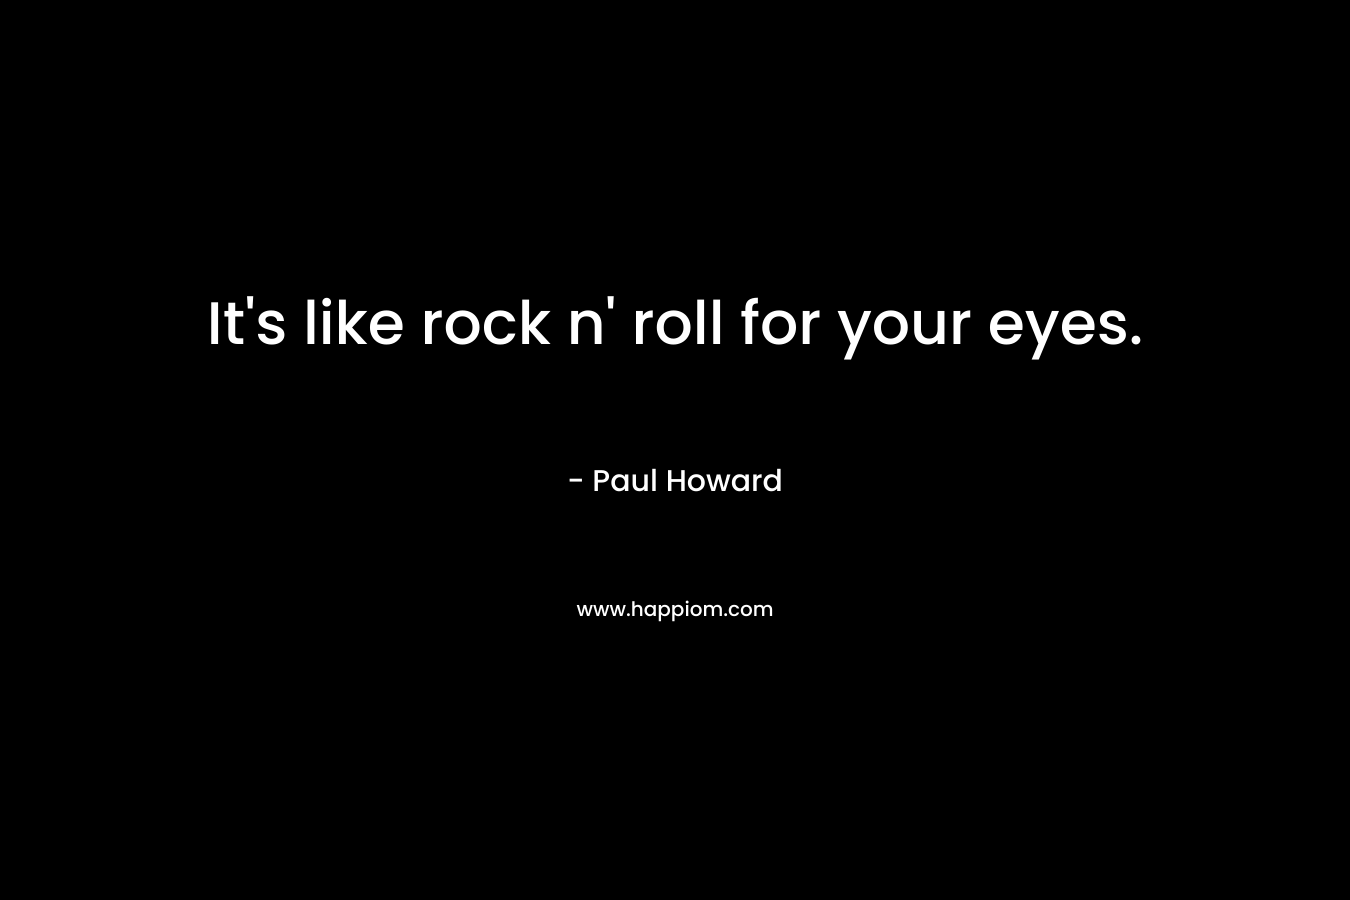 It’s like rock n’ roll for your eyes. – Paul Howard